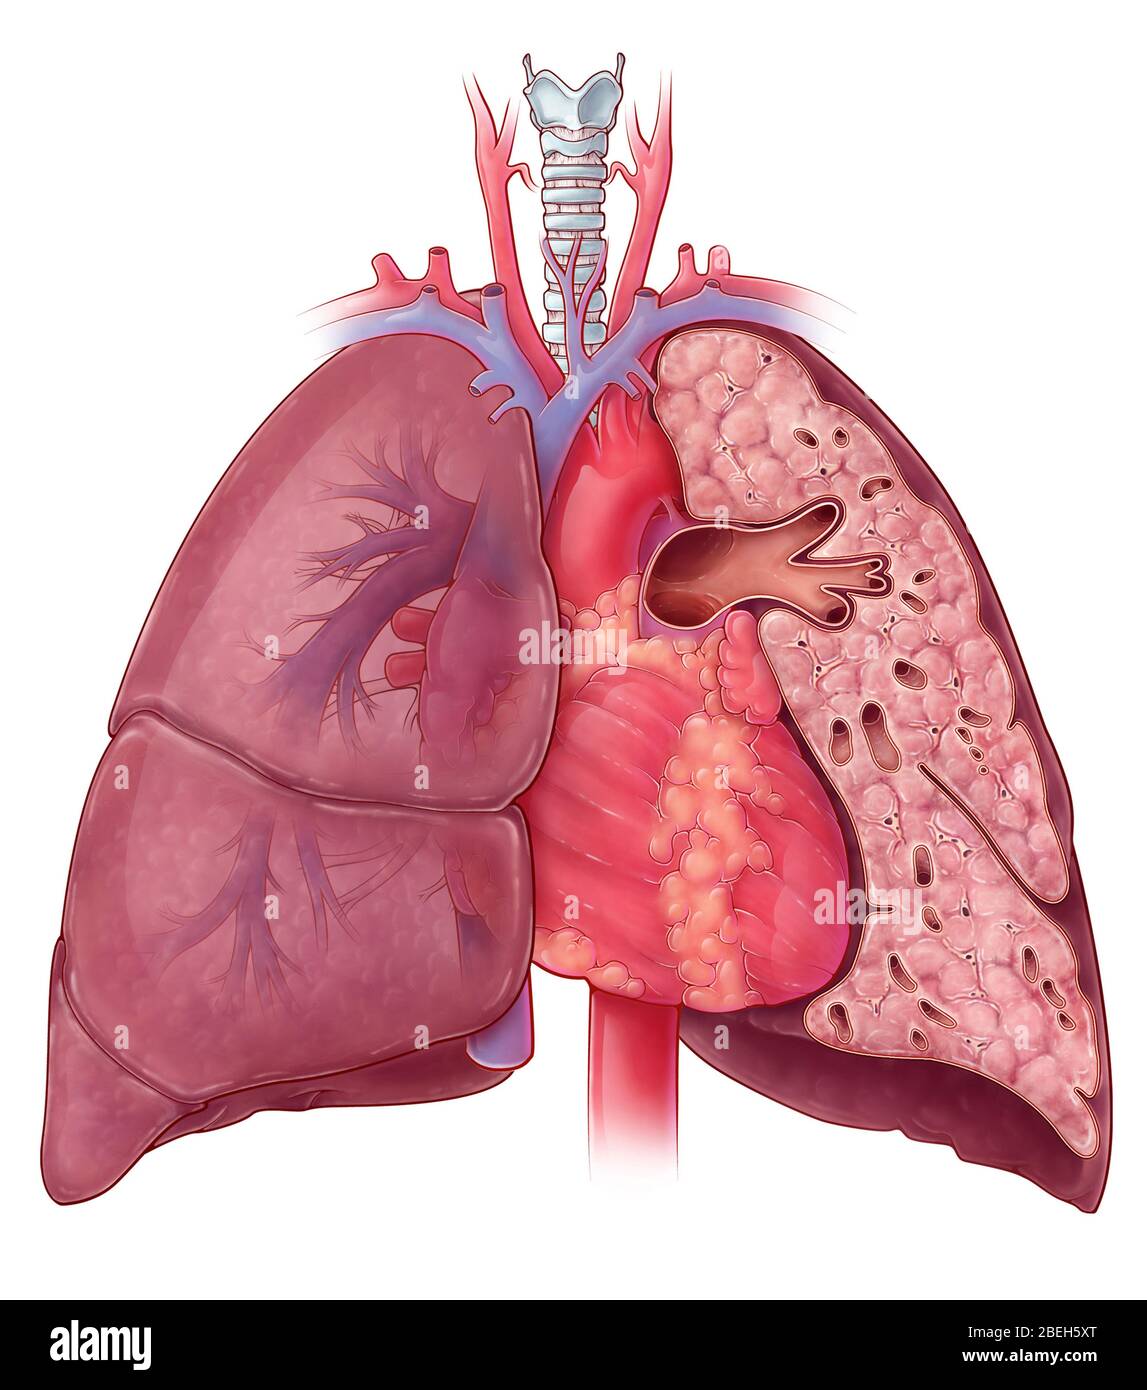 Anatomie des Herzens und der Lunge, Illustration Stockfoto